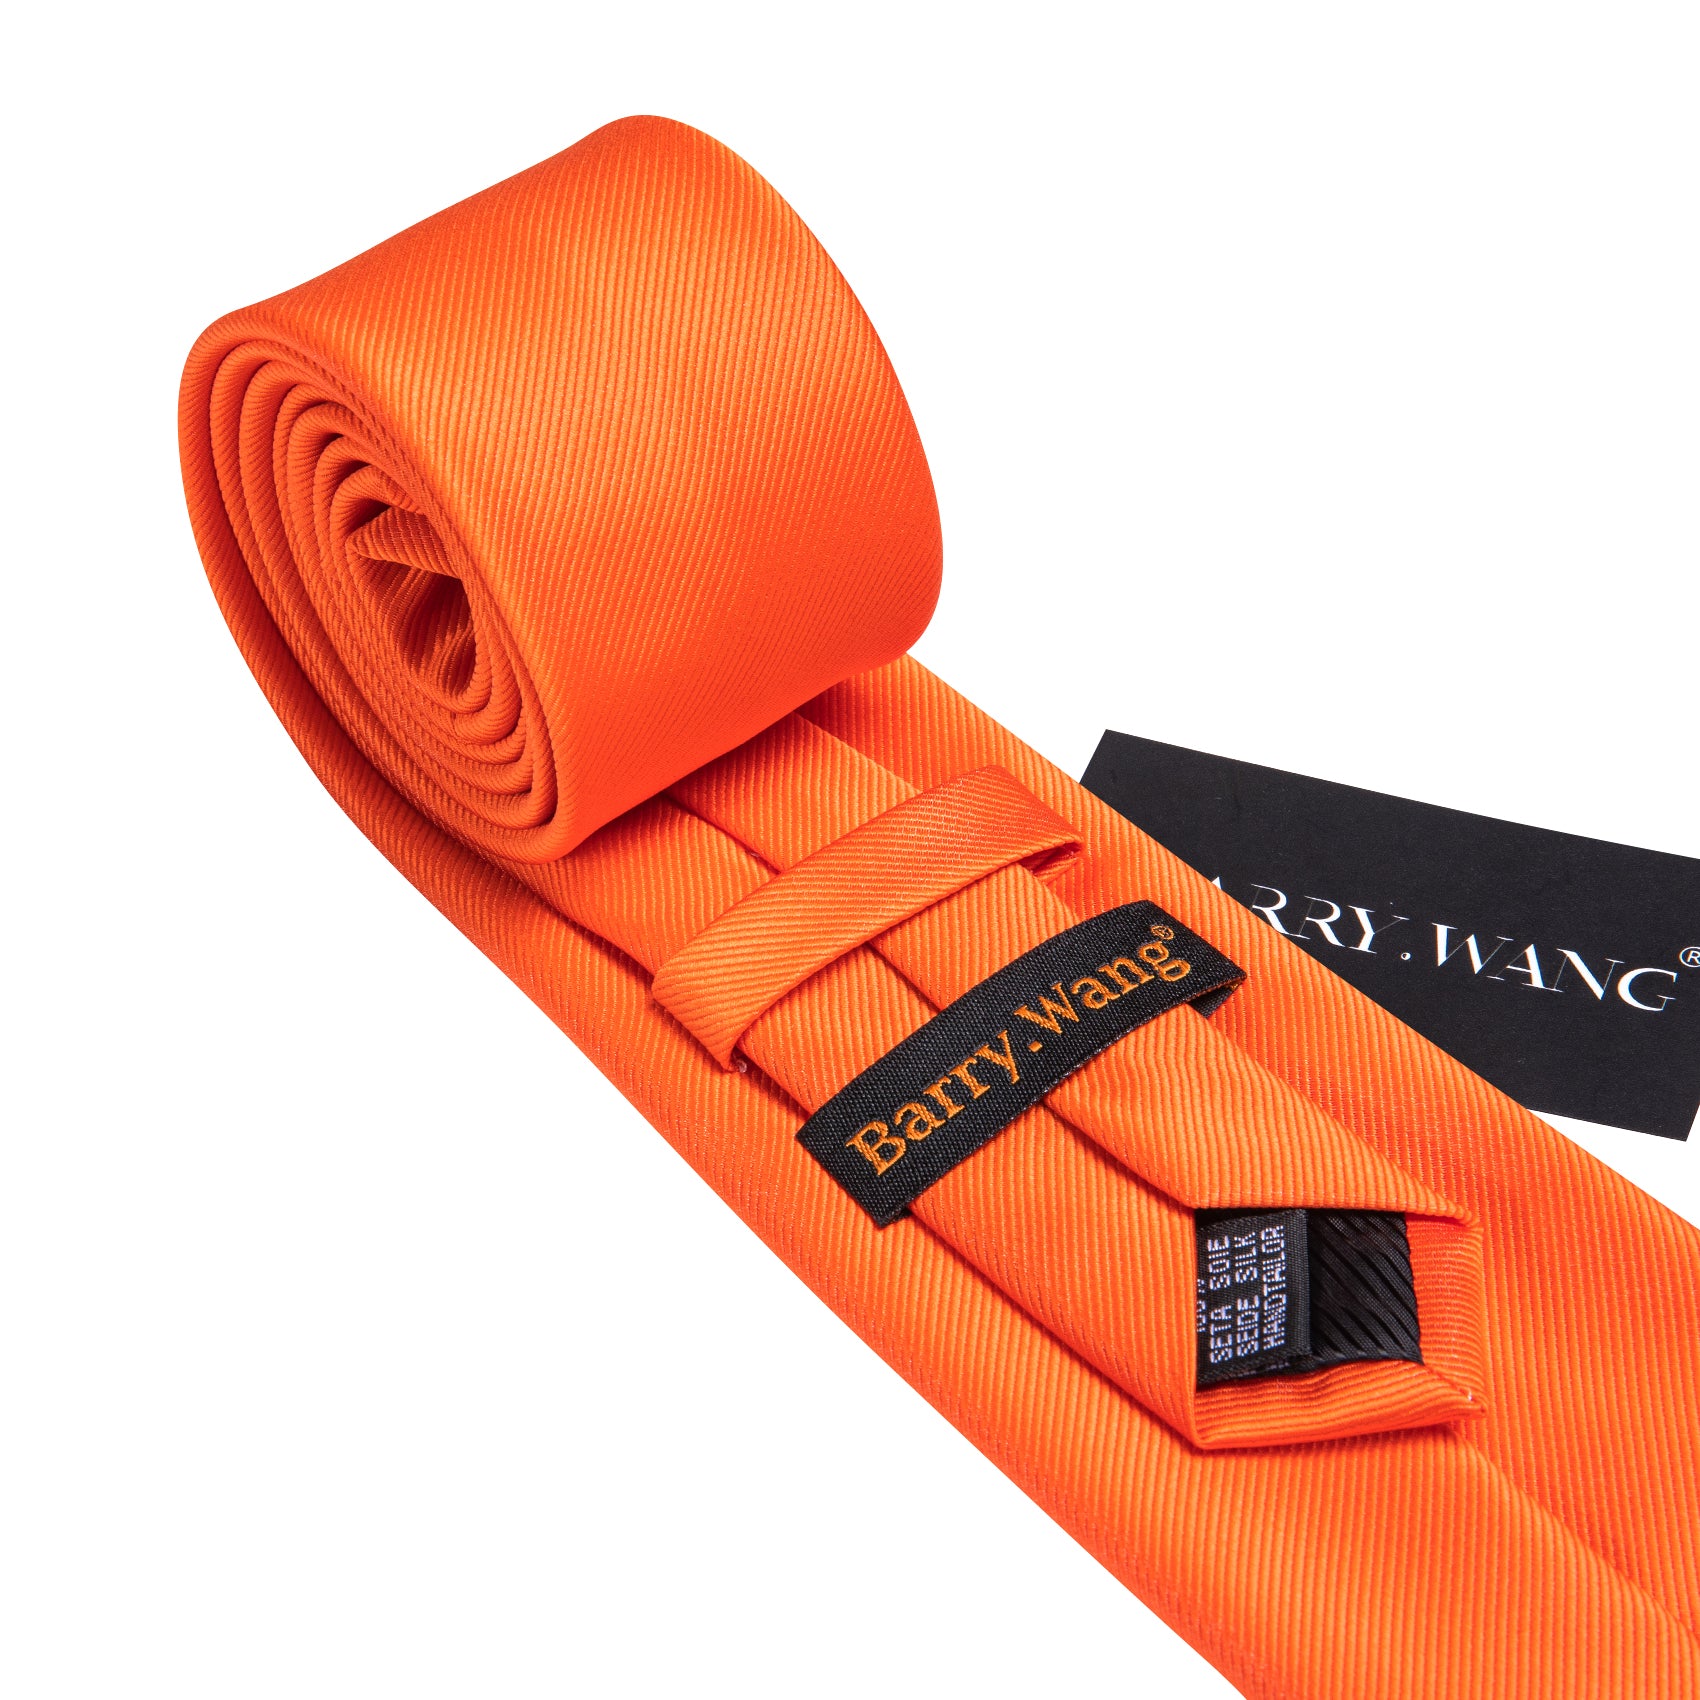 Bright Orange Solid Silk Tie Pocket Square Cufflinks Set